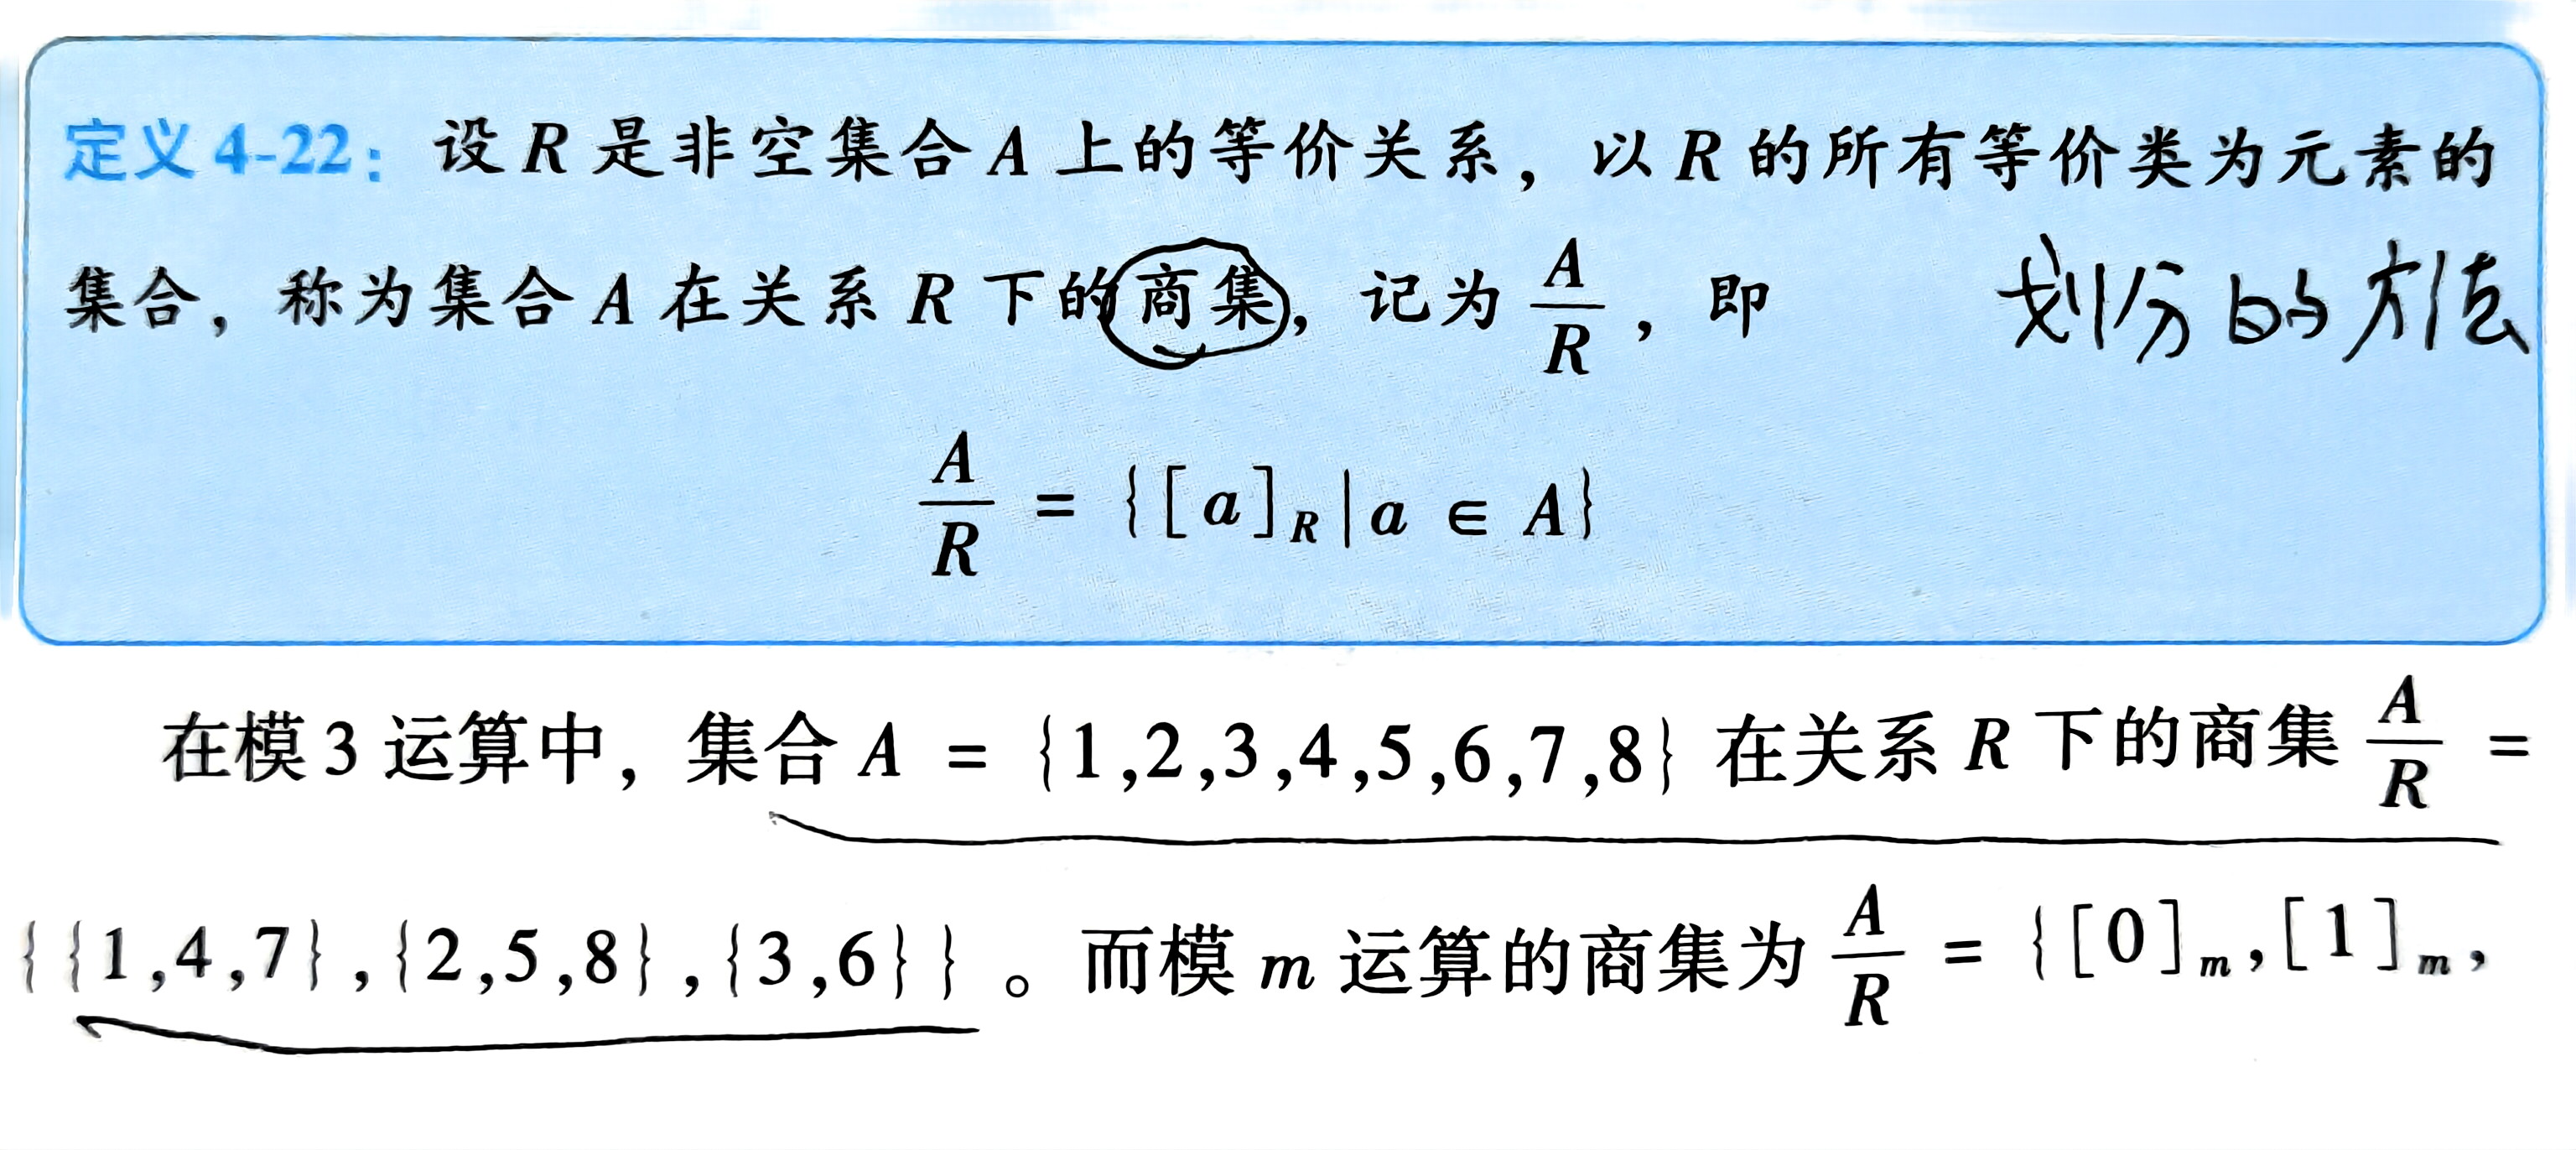 扫描件_定义4-22设R是非空集合A上的等价关系_1